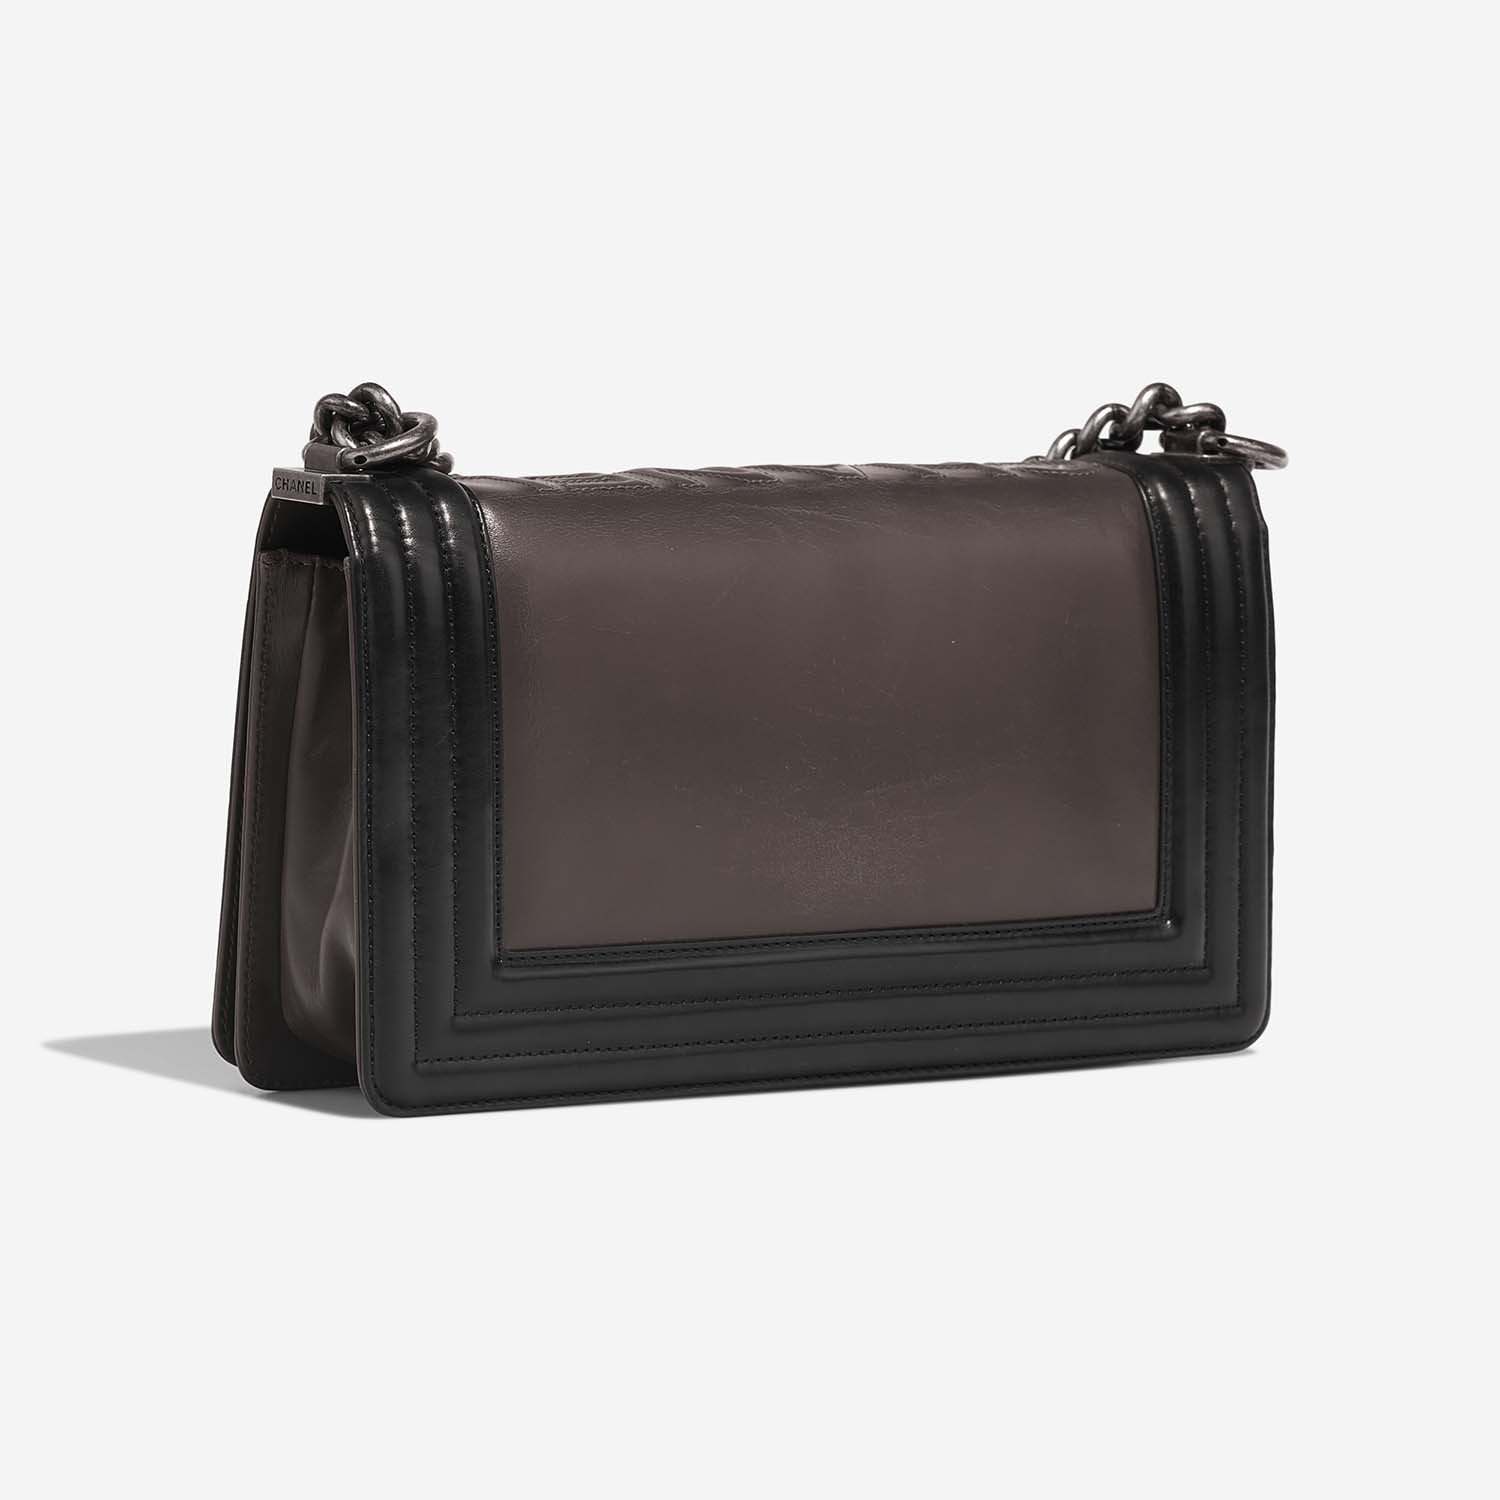 Chanel Boy OldMedium Schwarz-Grau Side Back | Verkaufen Sie Ihre Designer-Tasche auf Saclab.com